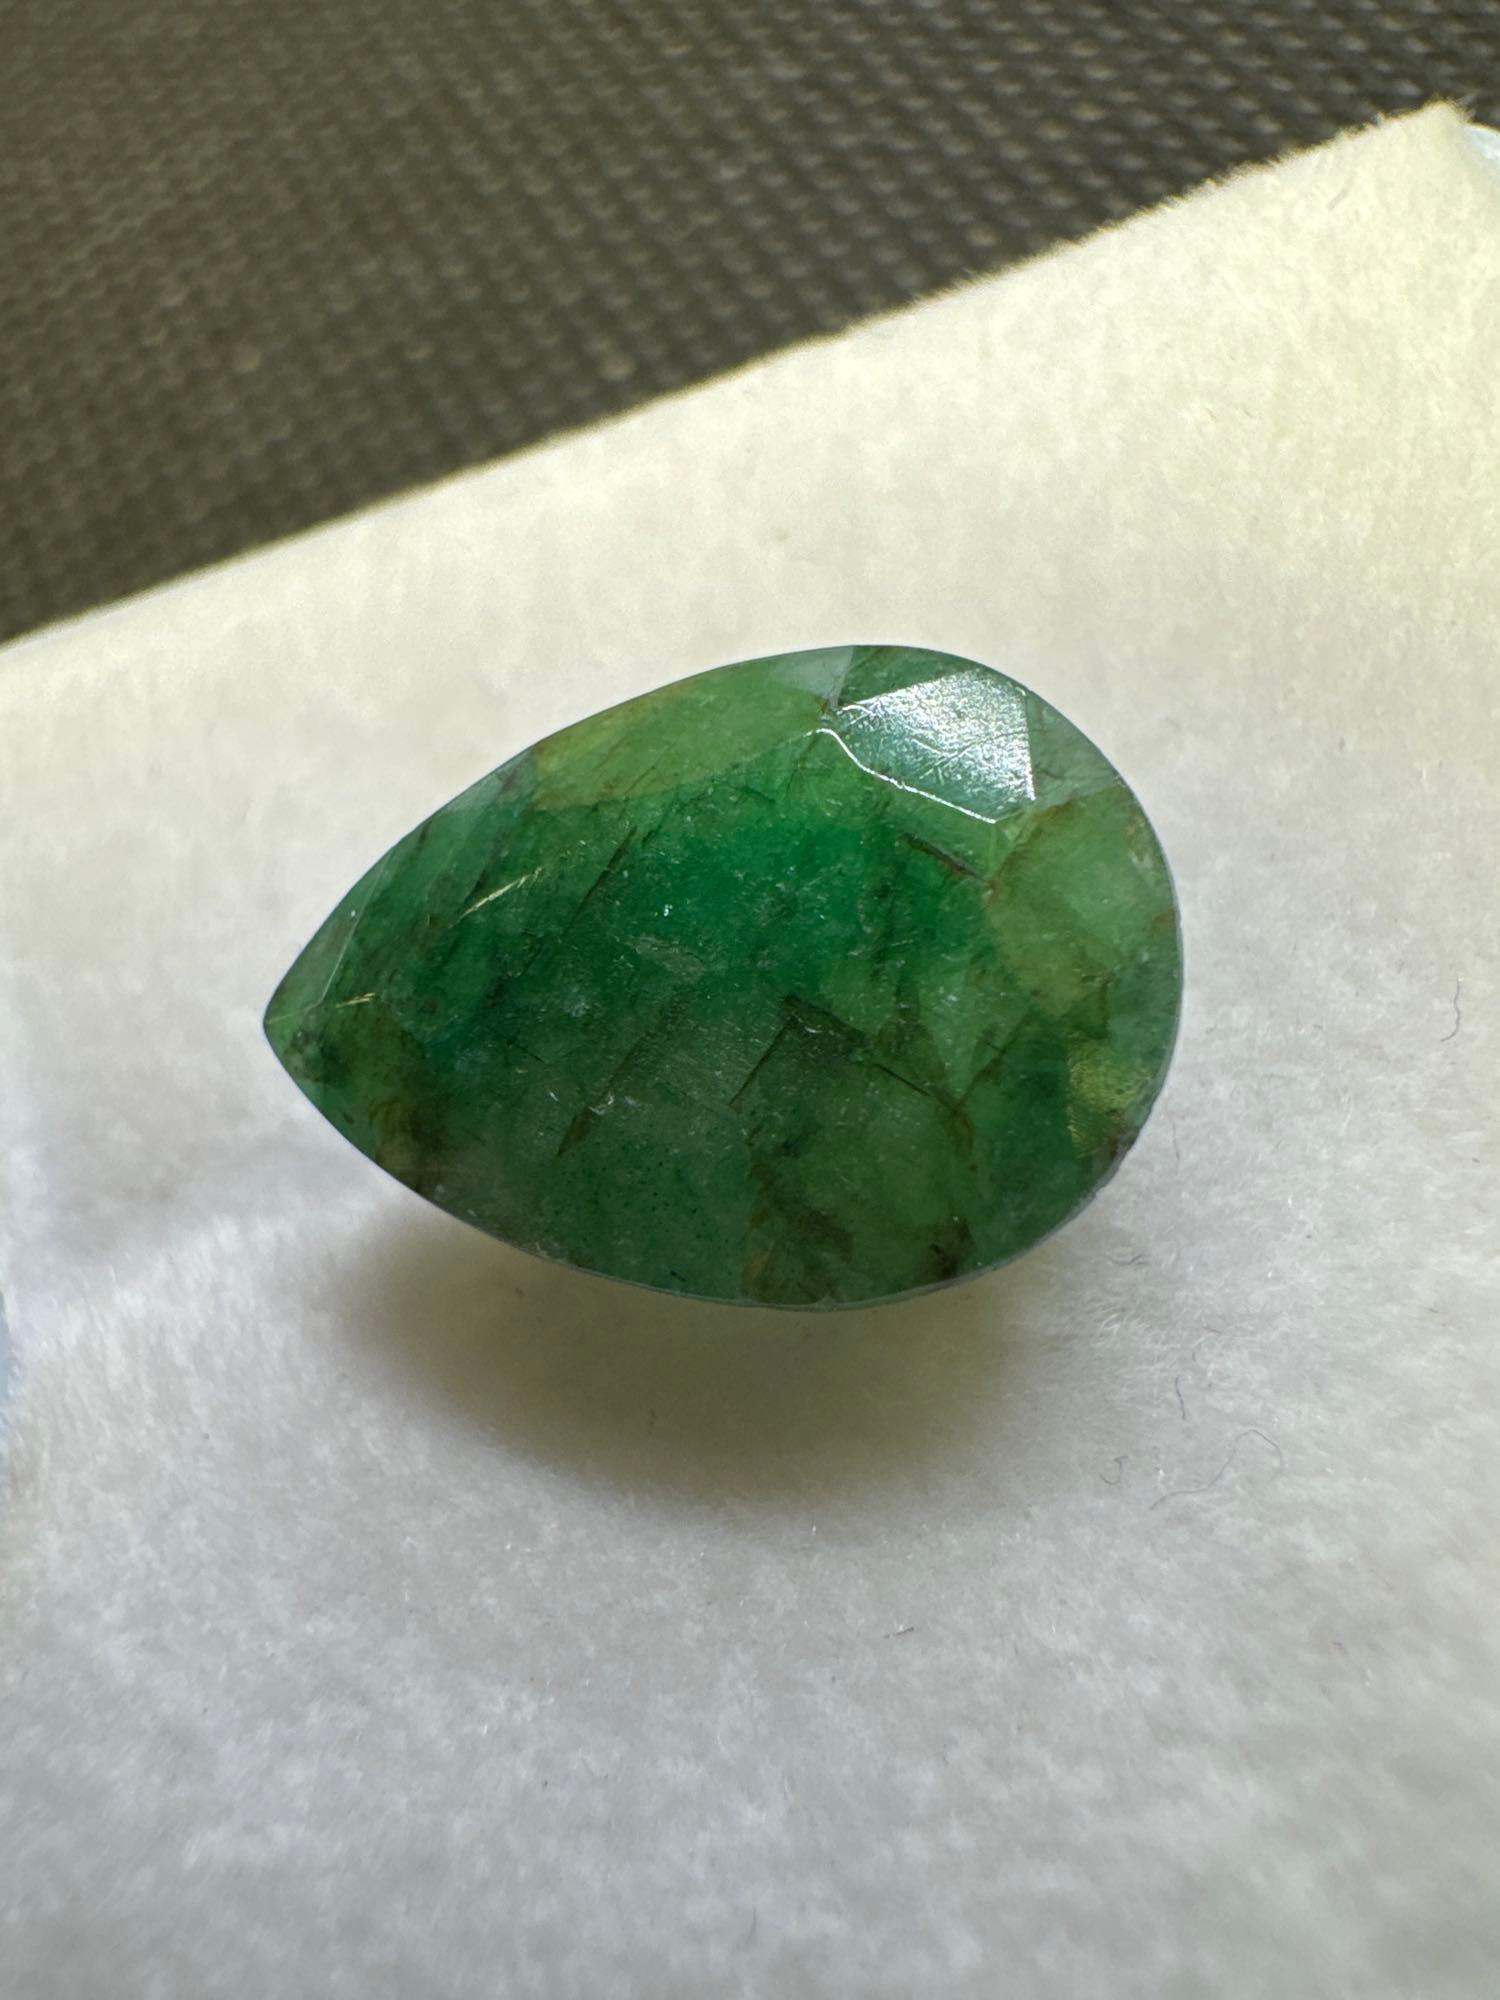 Pear Cut Green Emerald gemstone 6.70ct